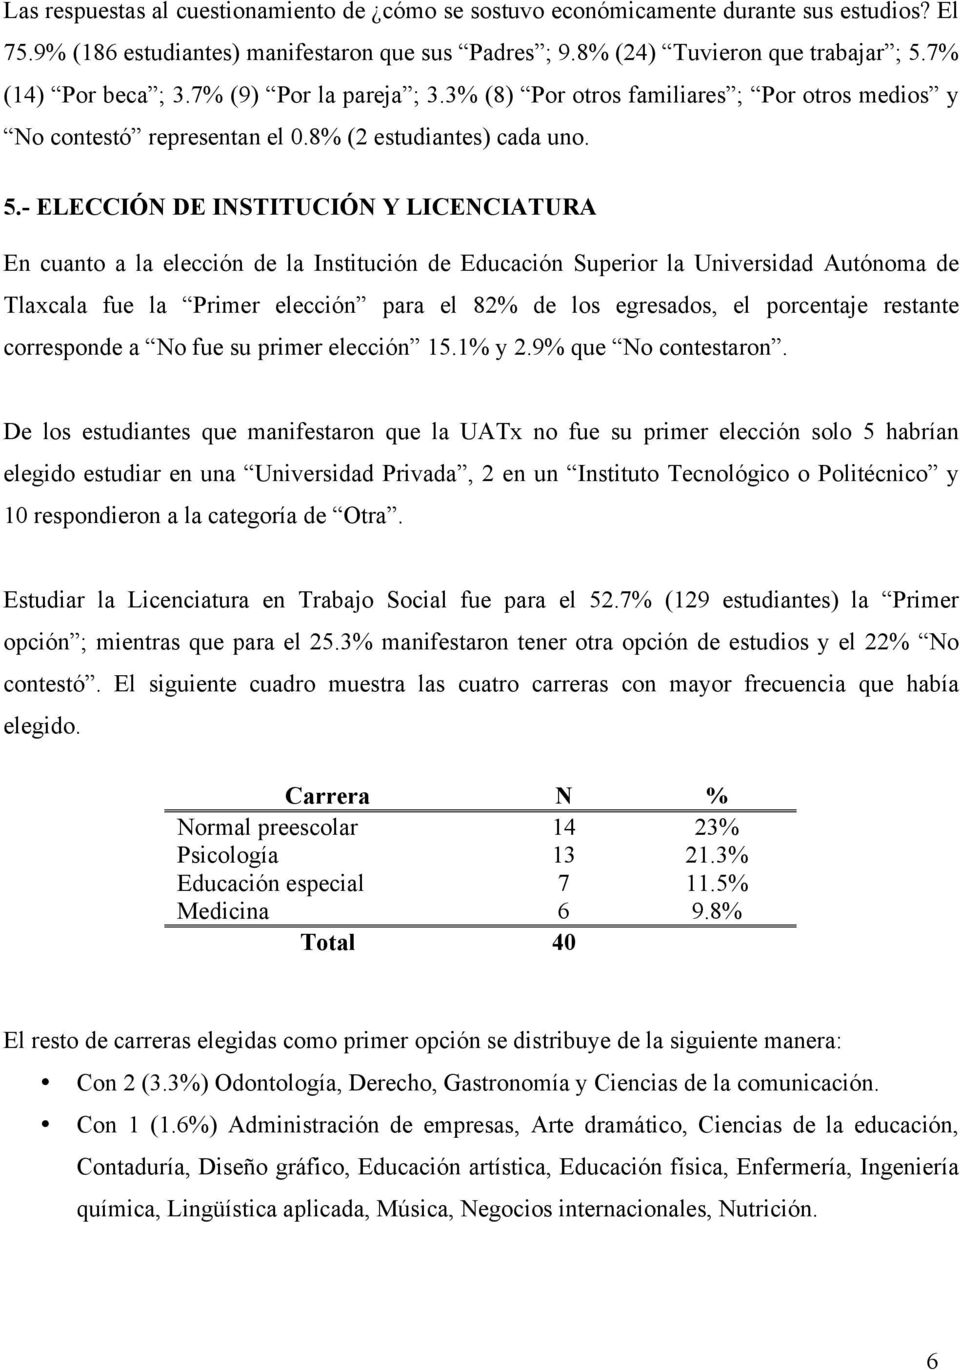 - ELECCIÓN DE INSTITUCIÓN Y LICENCIATURA En cuanto a la elección de la Institución de Educación Superior la Universidad Autónoma de Tlaxcala fue la Primer elección para el 82% de los egresados, el